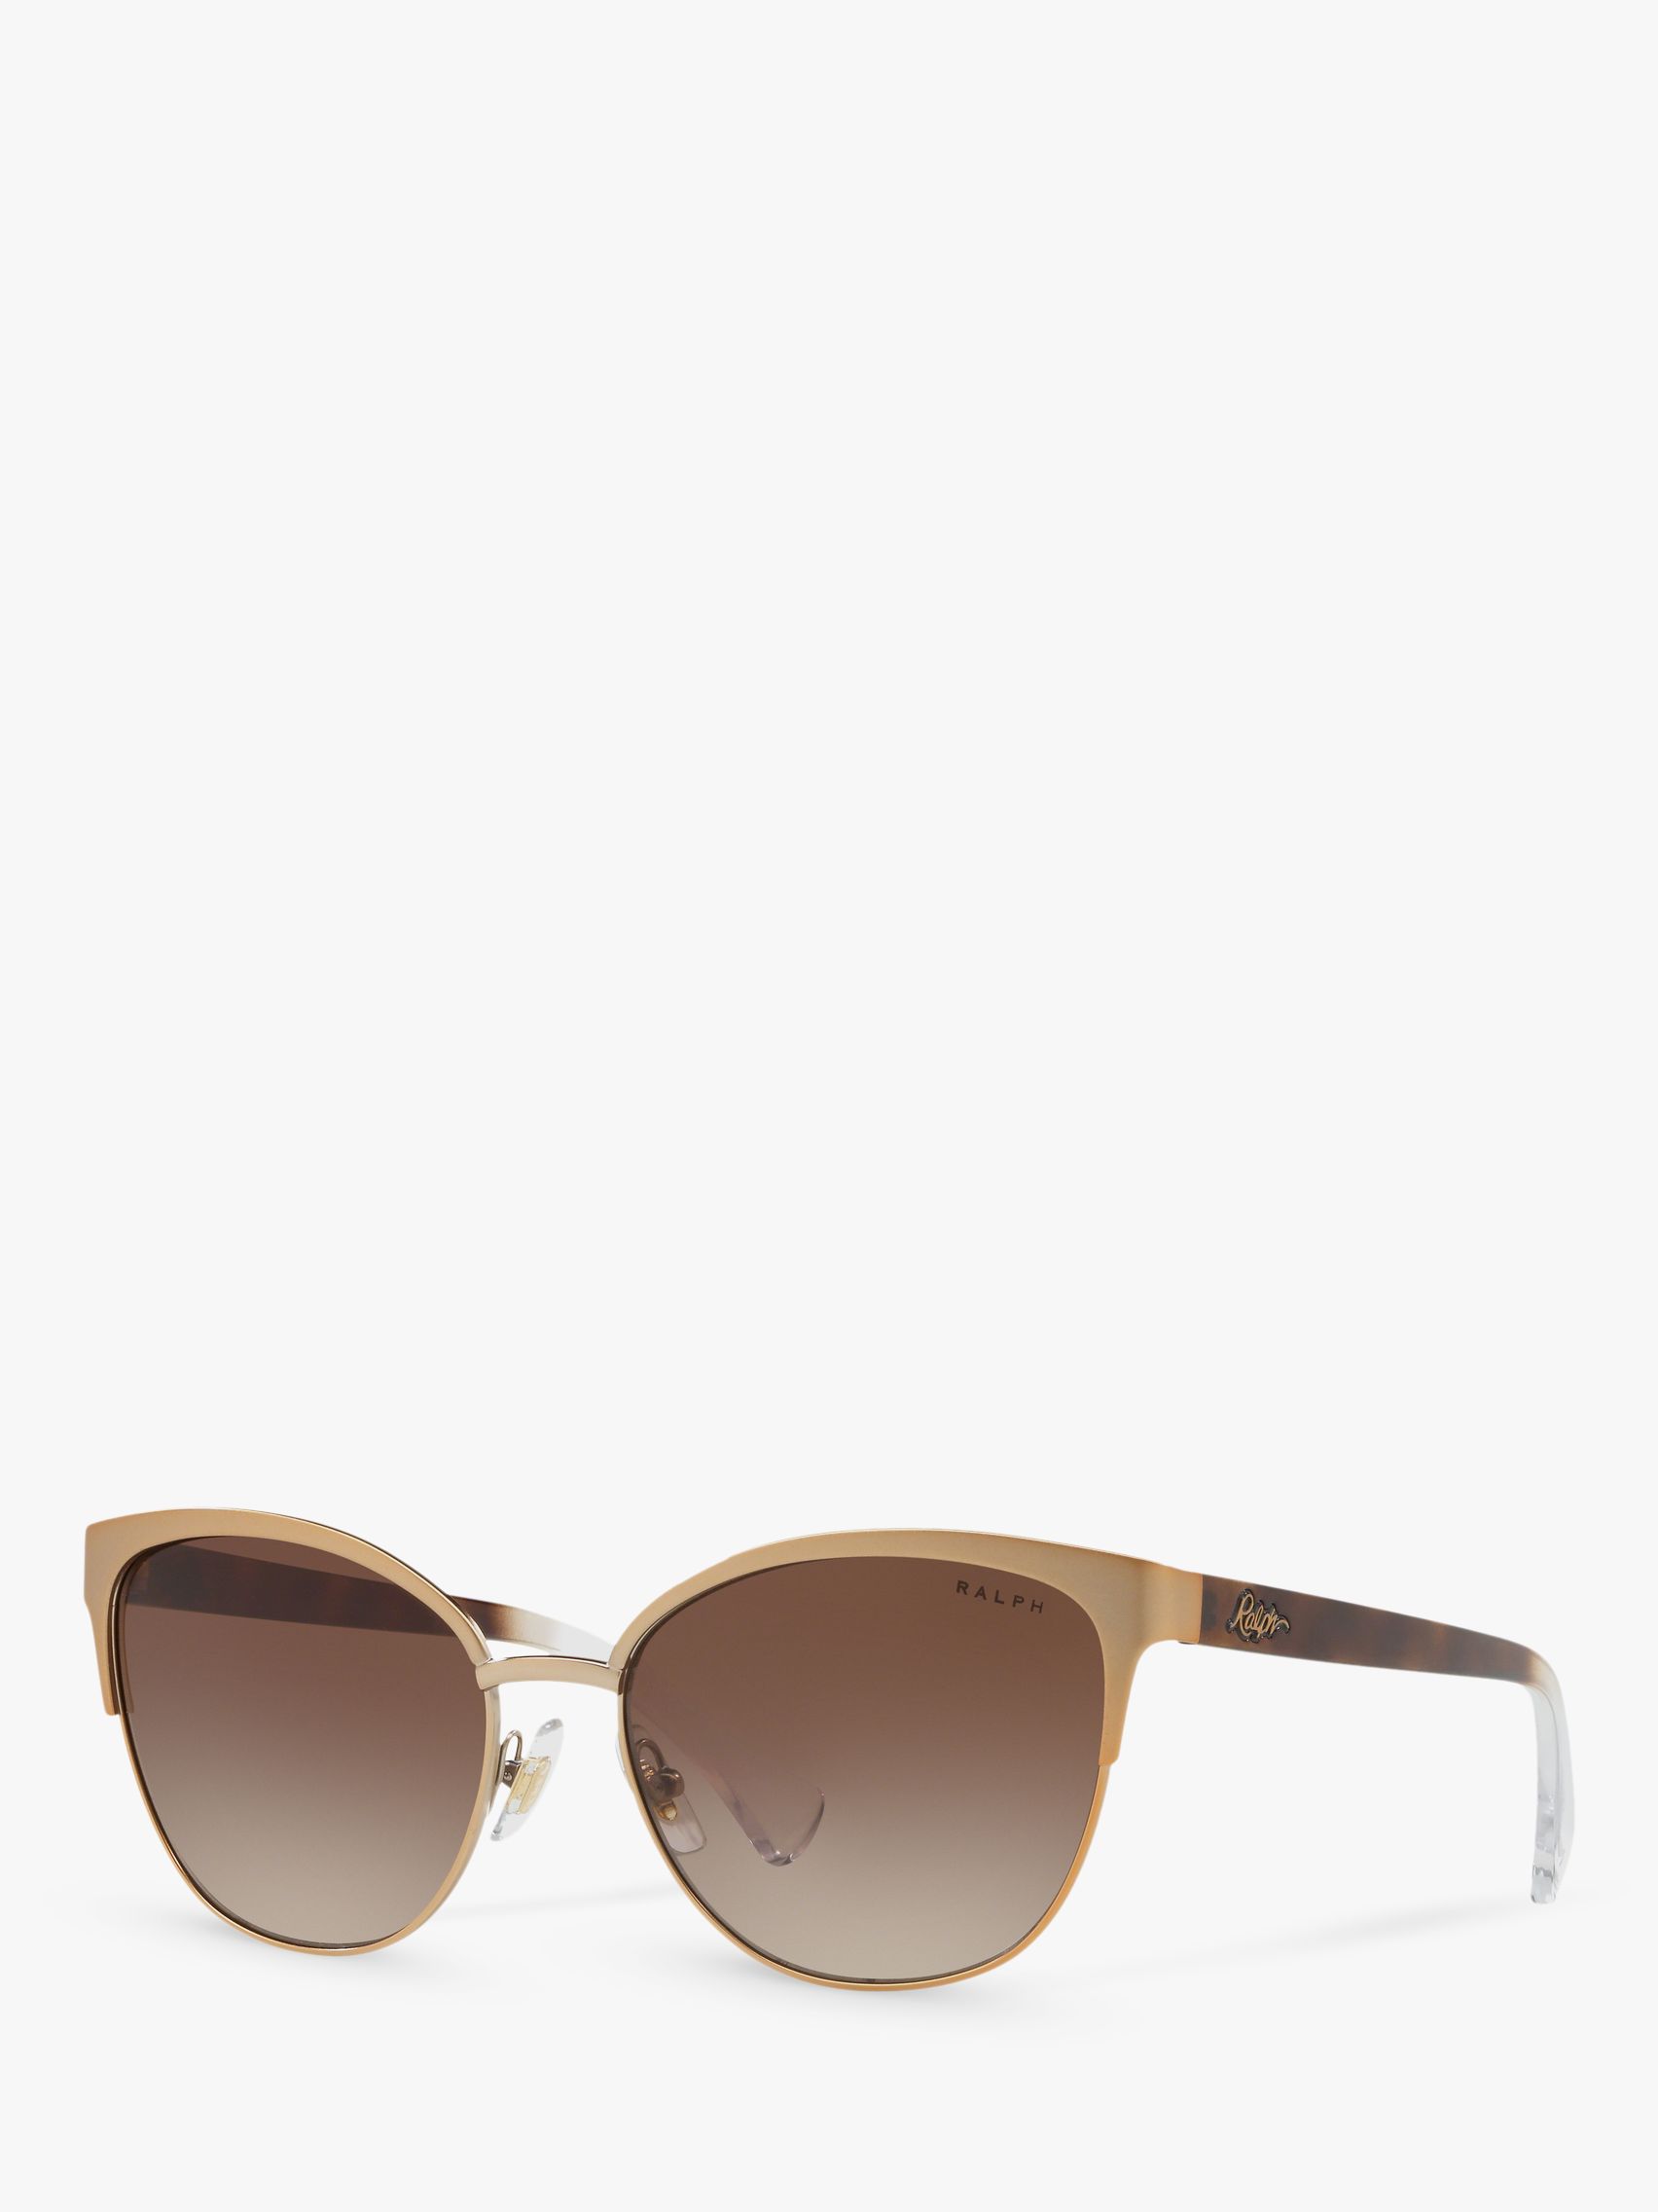 ralph lauren butterfly sunglasses